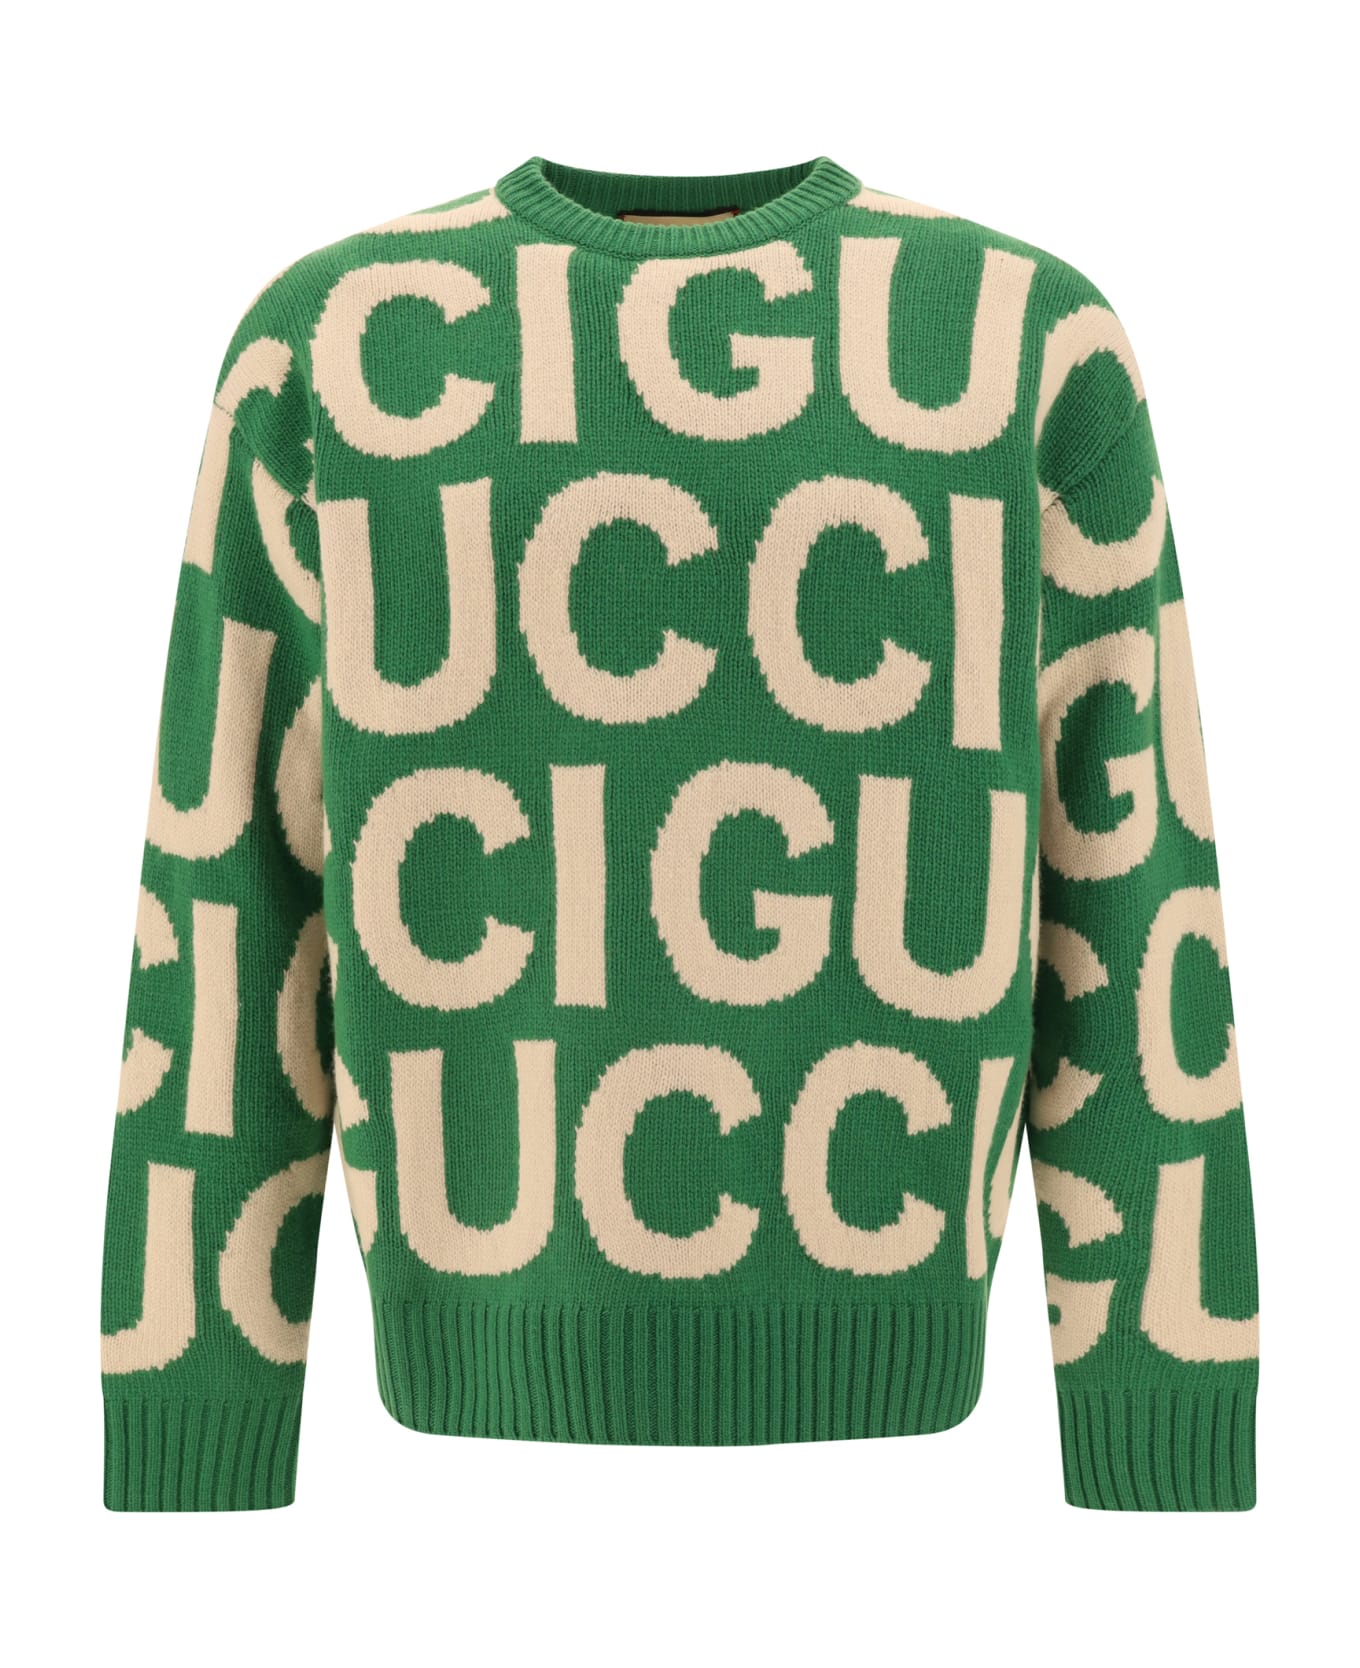 Gucci Sweater - Yard/ivory